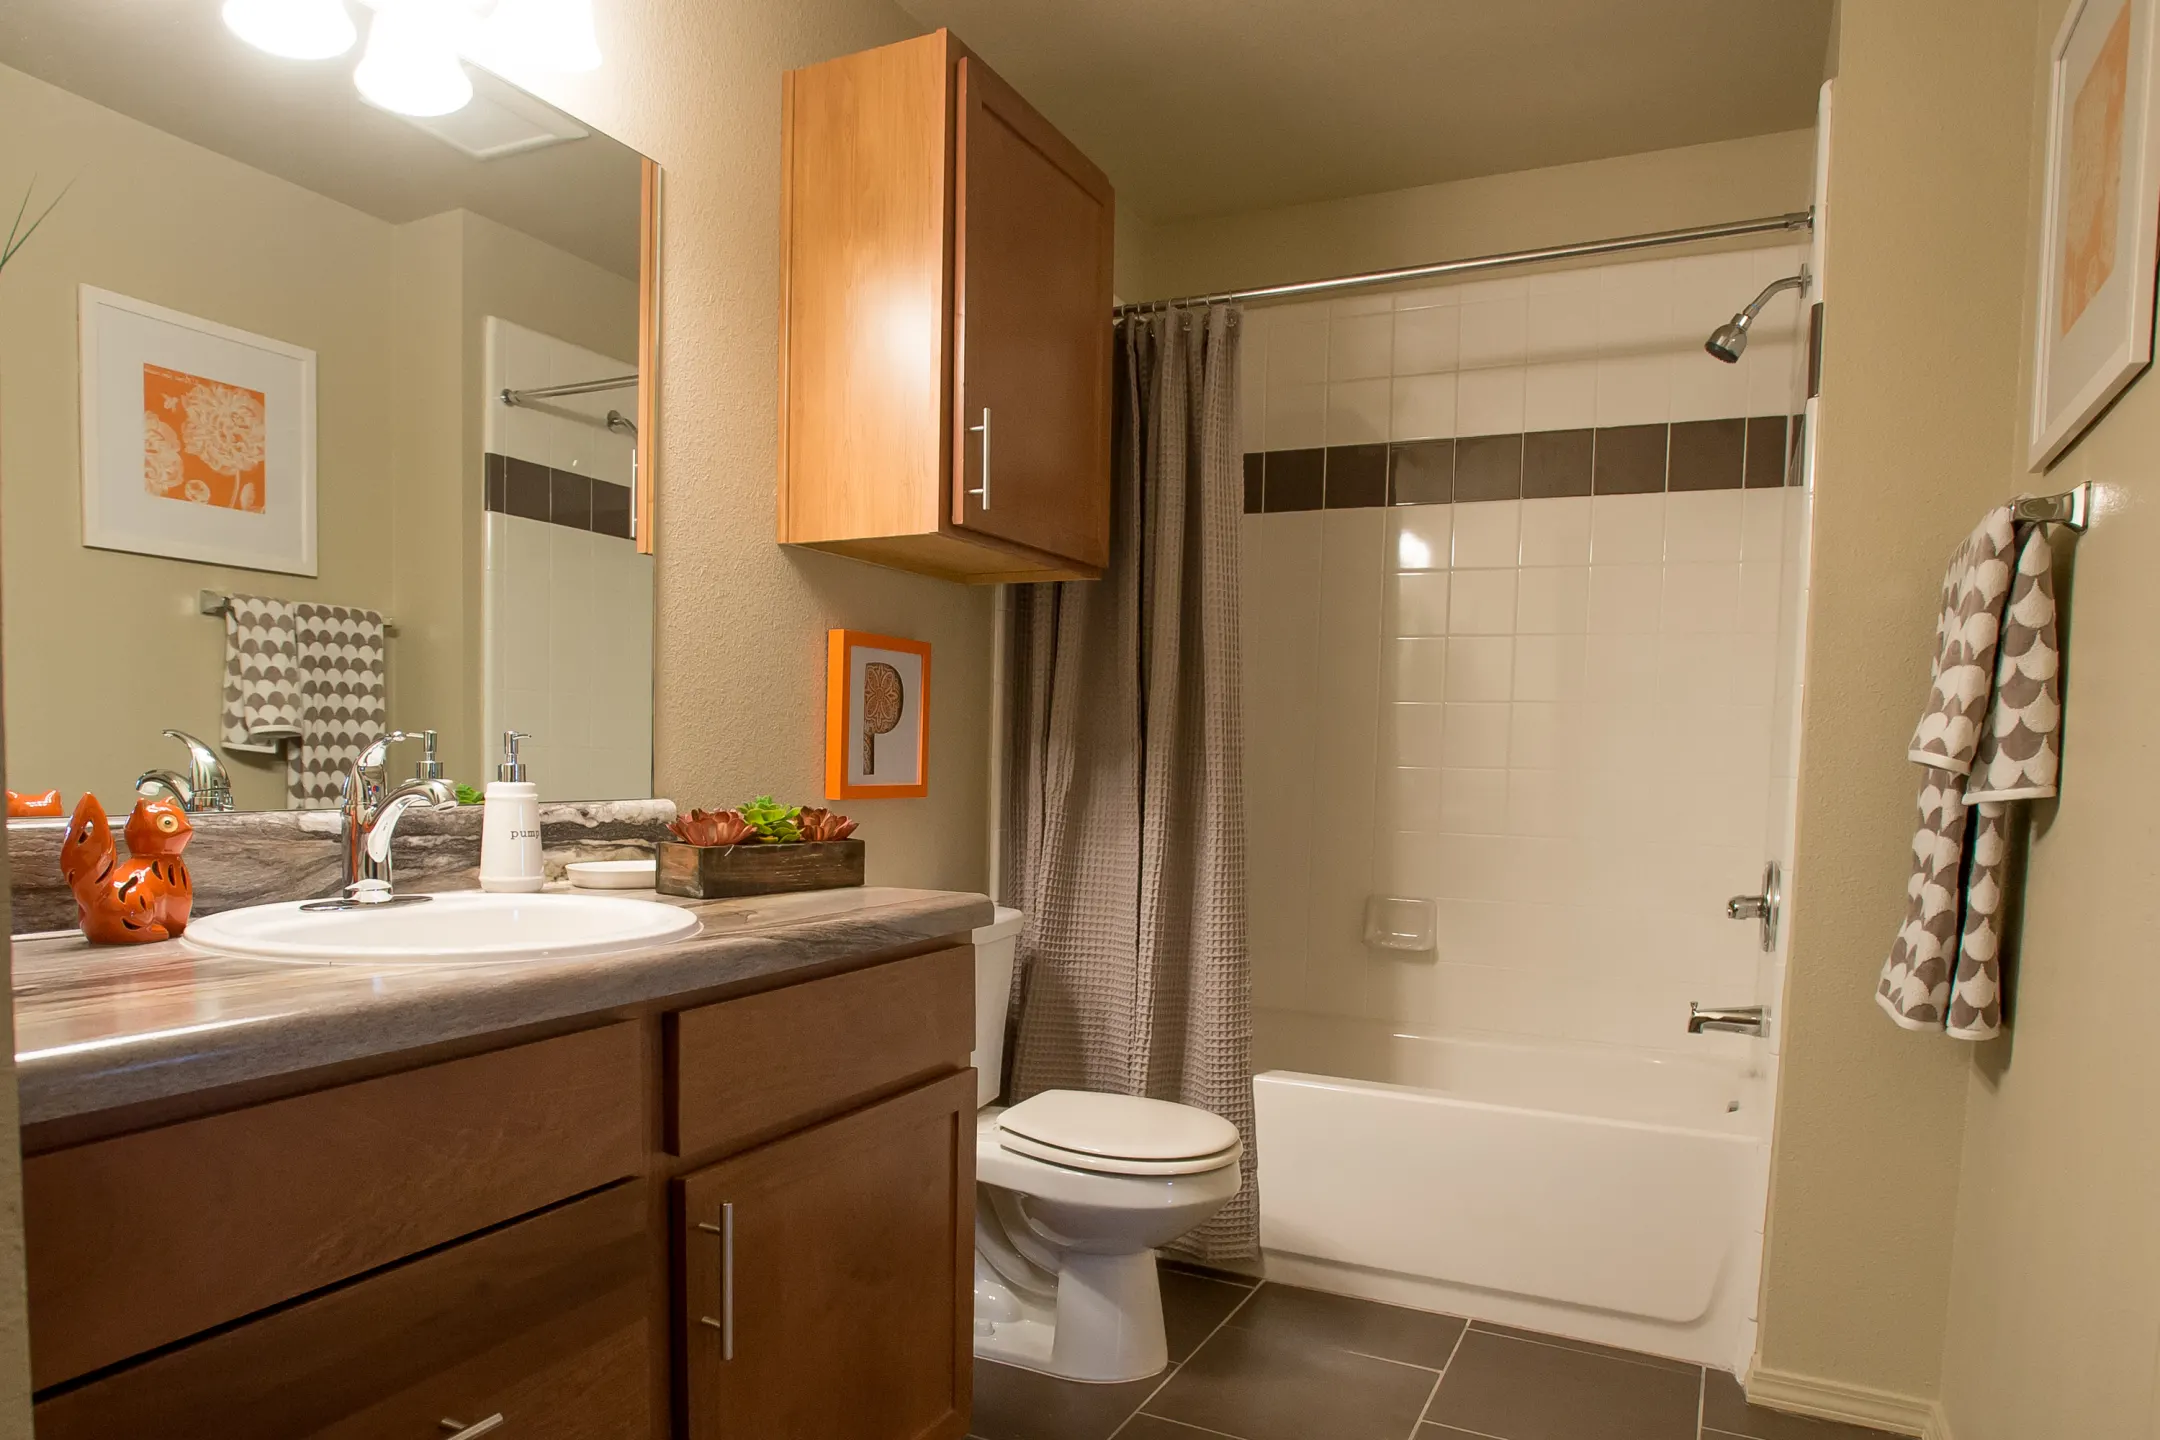 Bathroom - Portofino Apartments - Wichita, KS